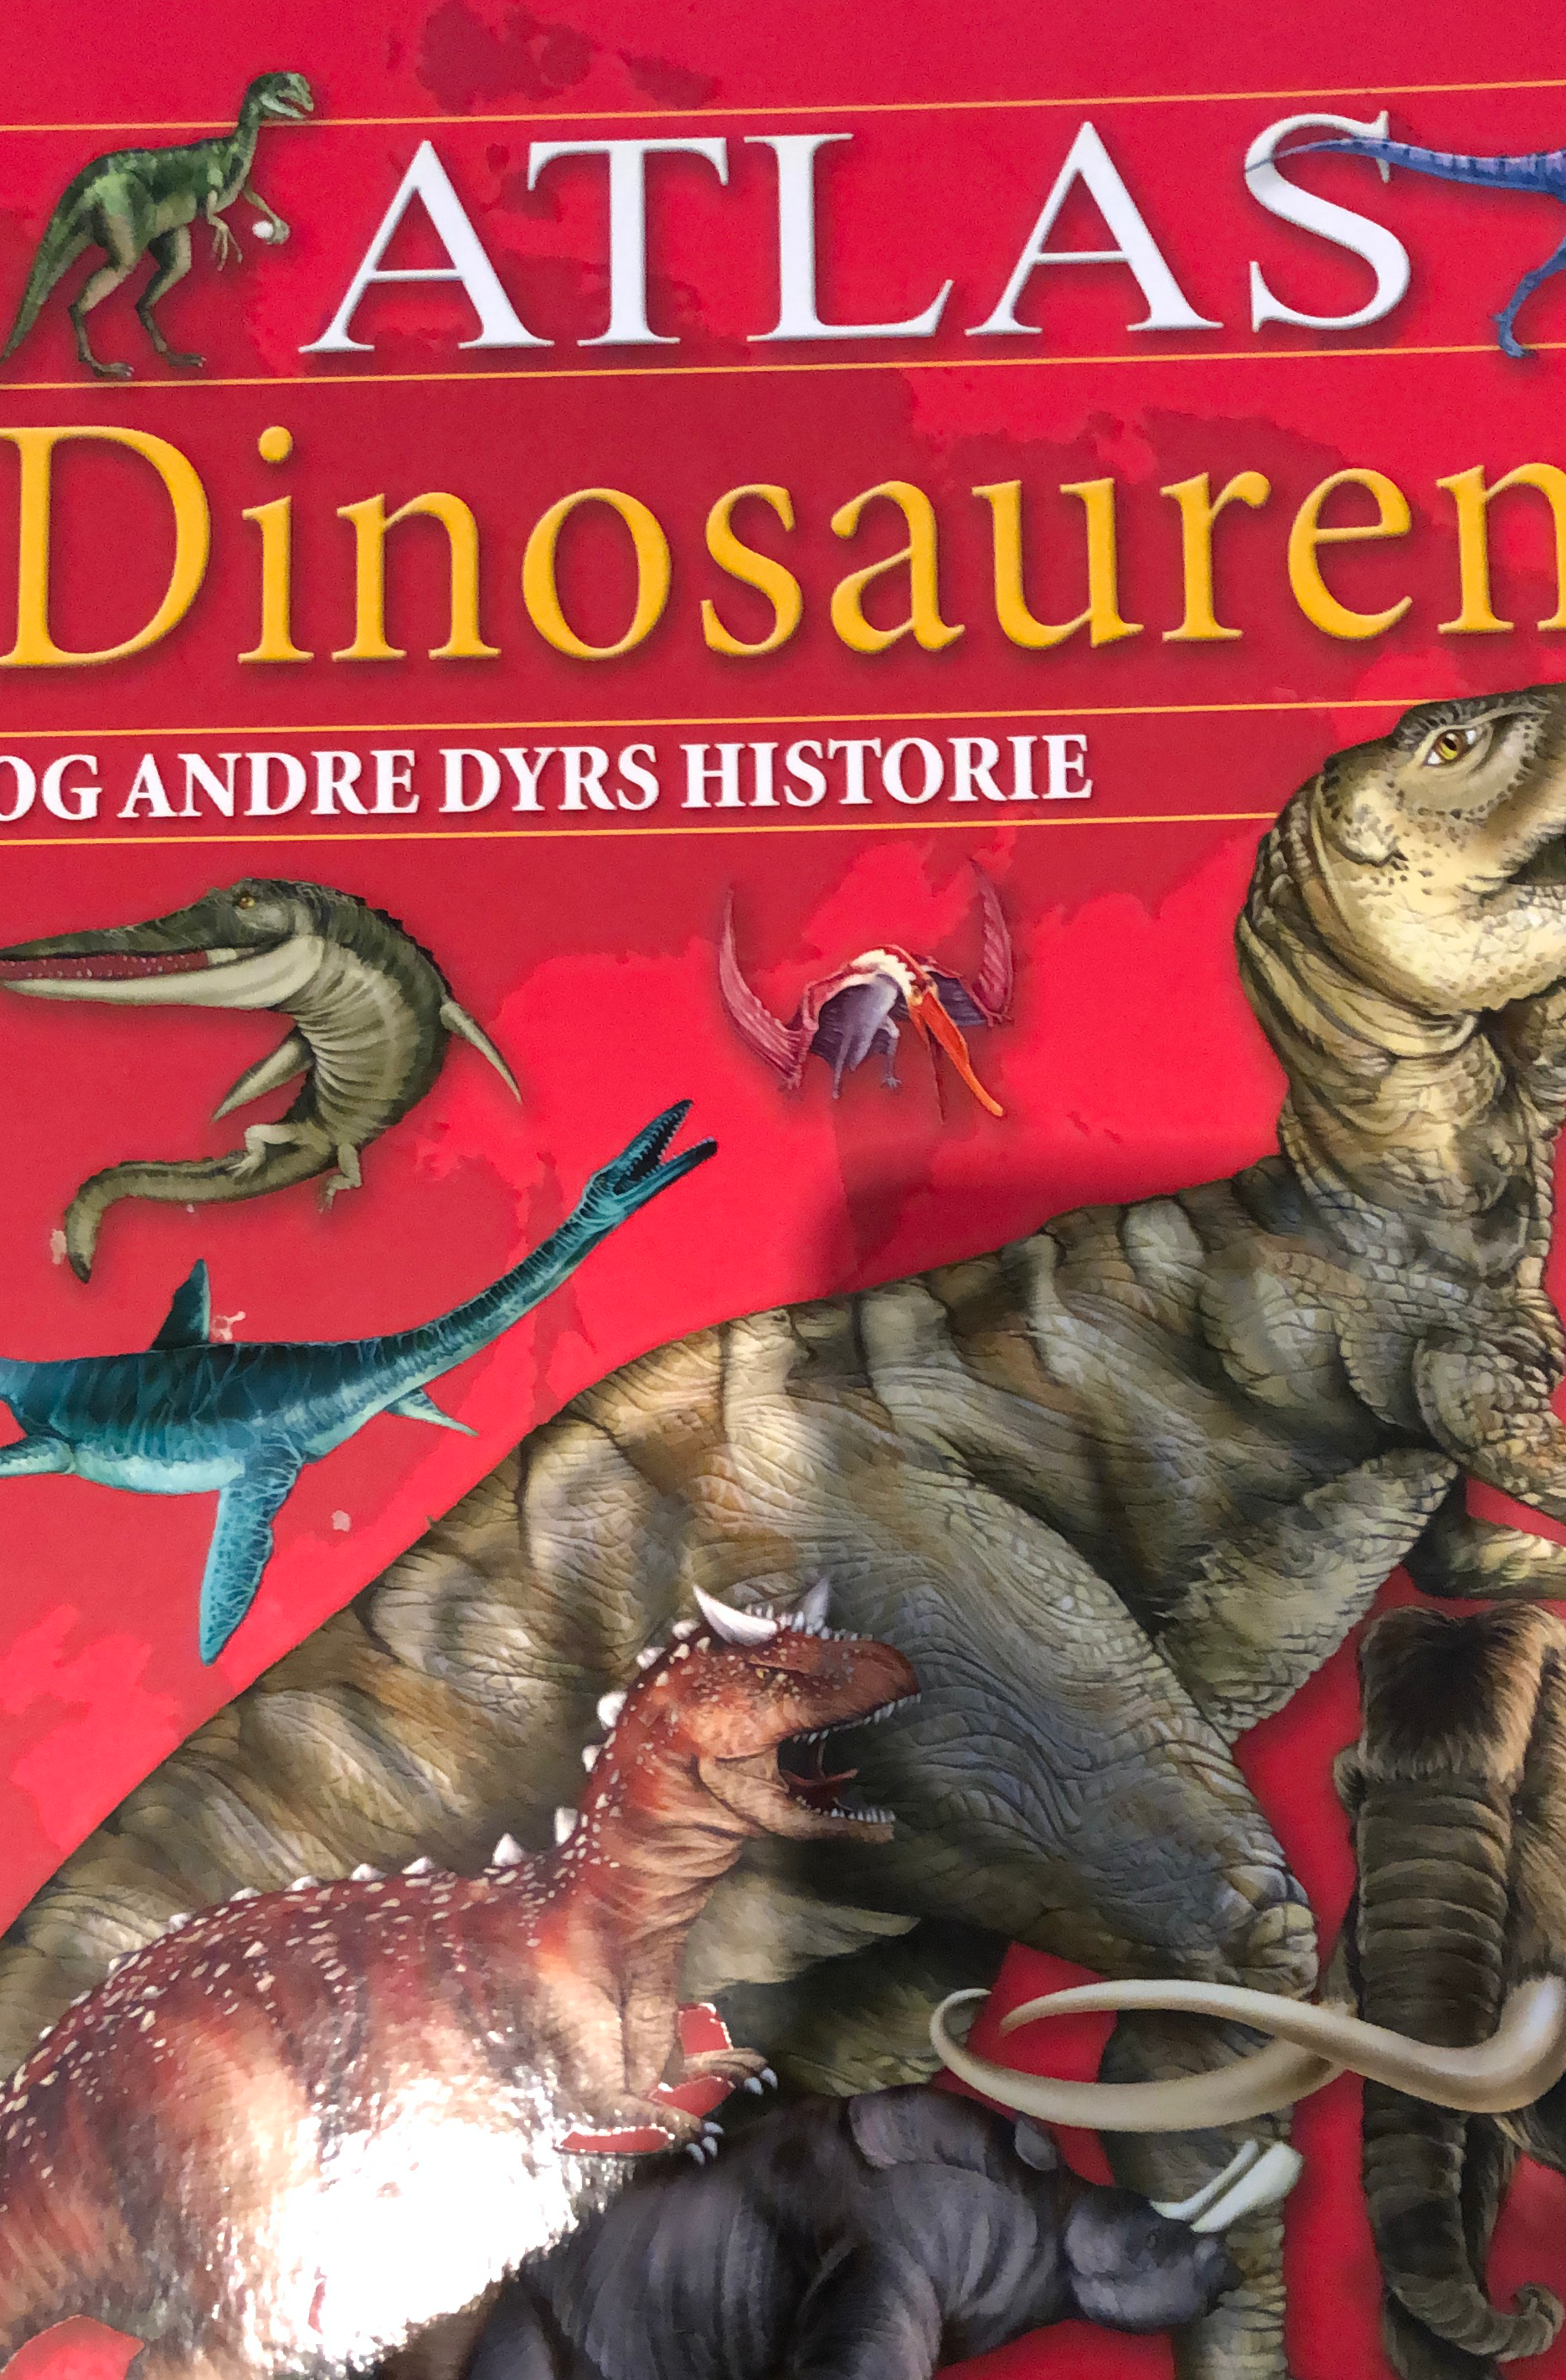 Atlas Dinosaurene og andre dyrs historie